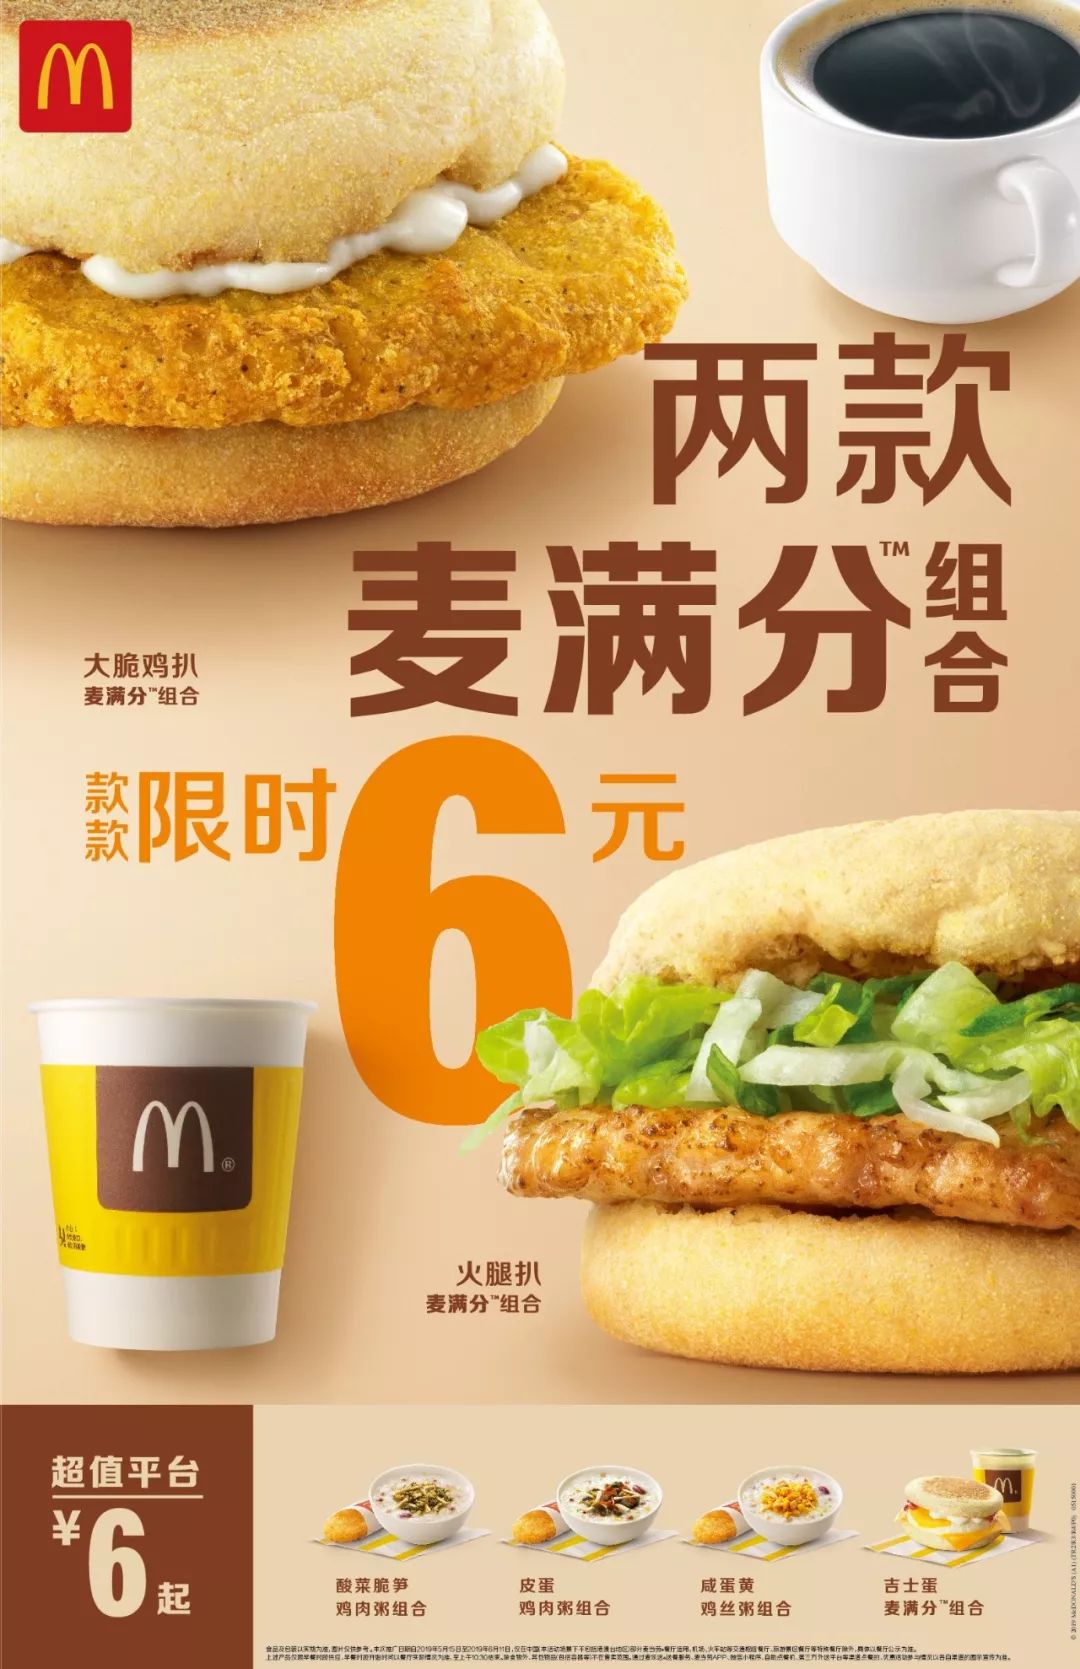 【麦当劳】| 新品上市! 12元吃遍随心配!